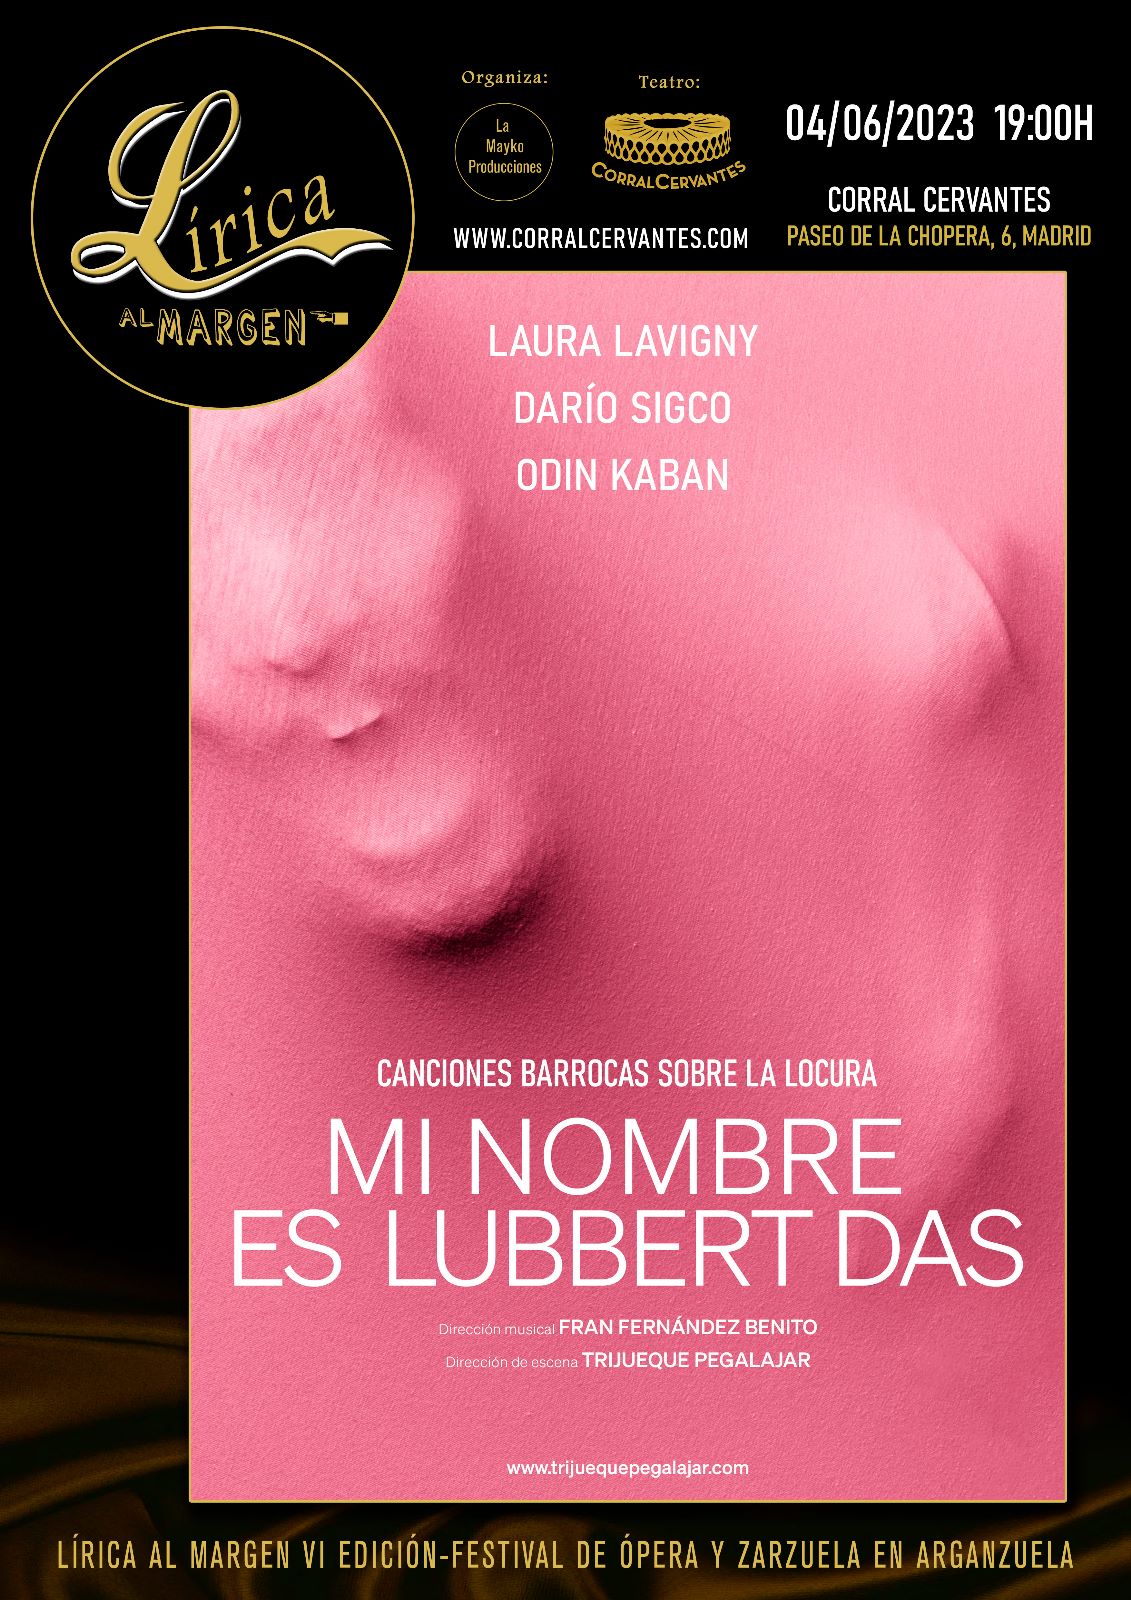 Cartel promocional del espectáculo "Mi nombre es Lubbert Das" 